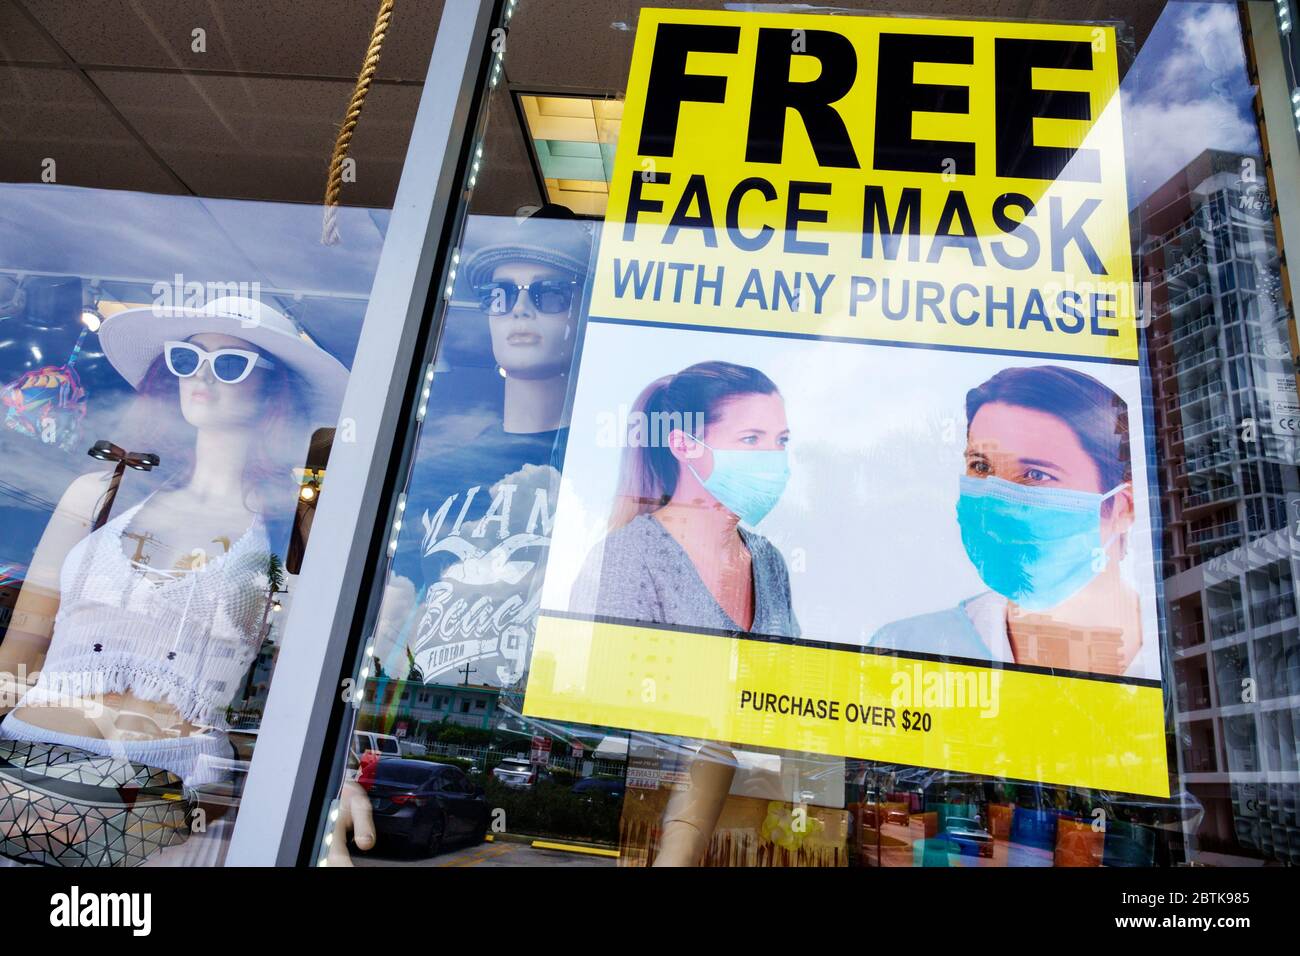 Miami Beach Florida, boutique de souvenirs, shopping, masque de visage gratuit avec tout achat de plus de $20 promotion, Covid-19 coronavirus pandémie maladie de crise, SIG Banque D'Images